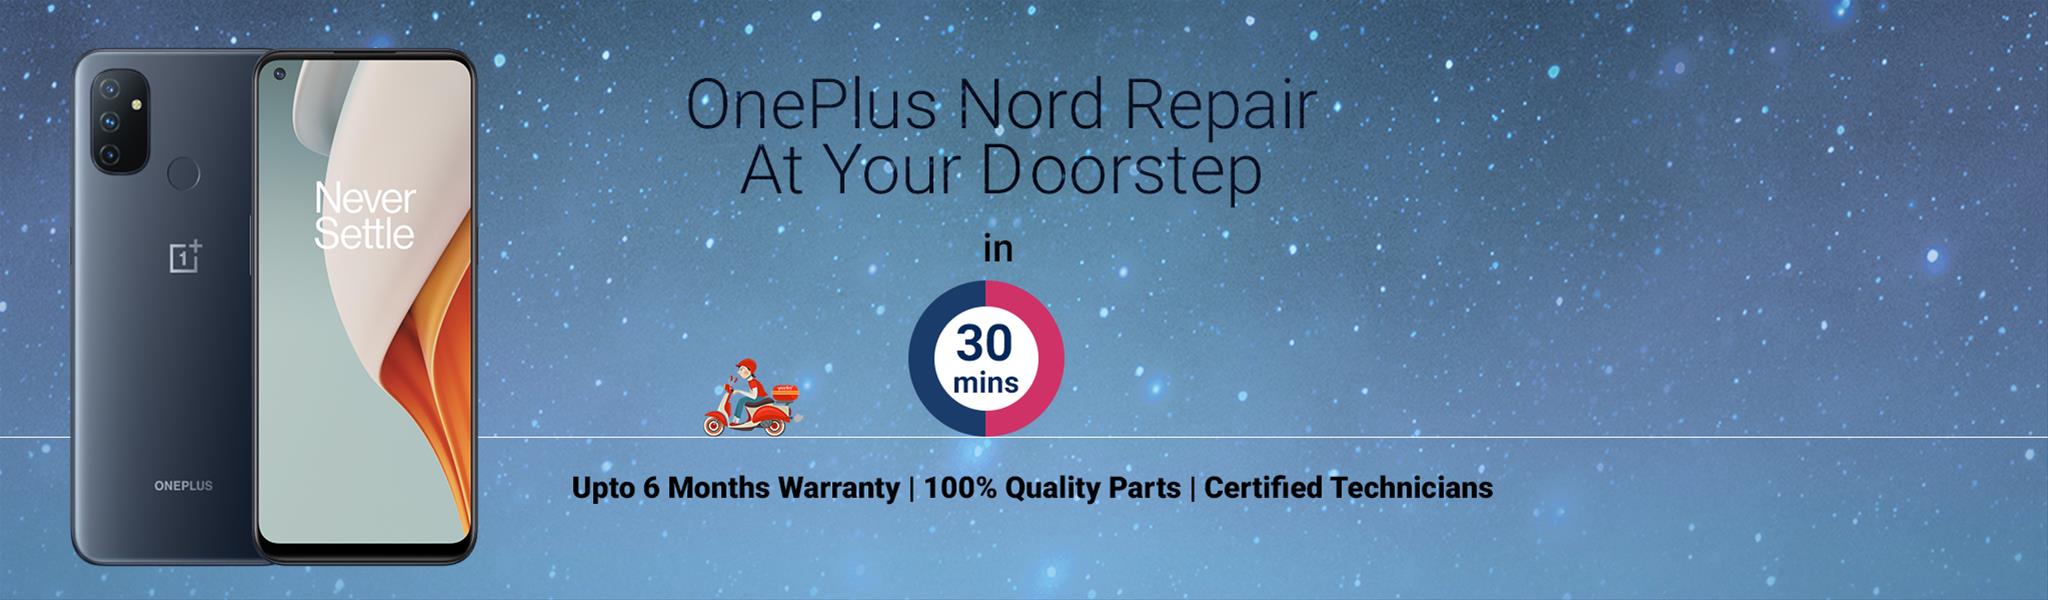 oneplus-nord-repair.jpg